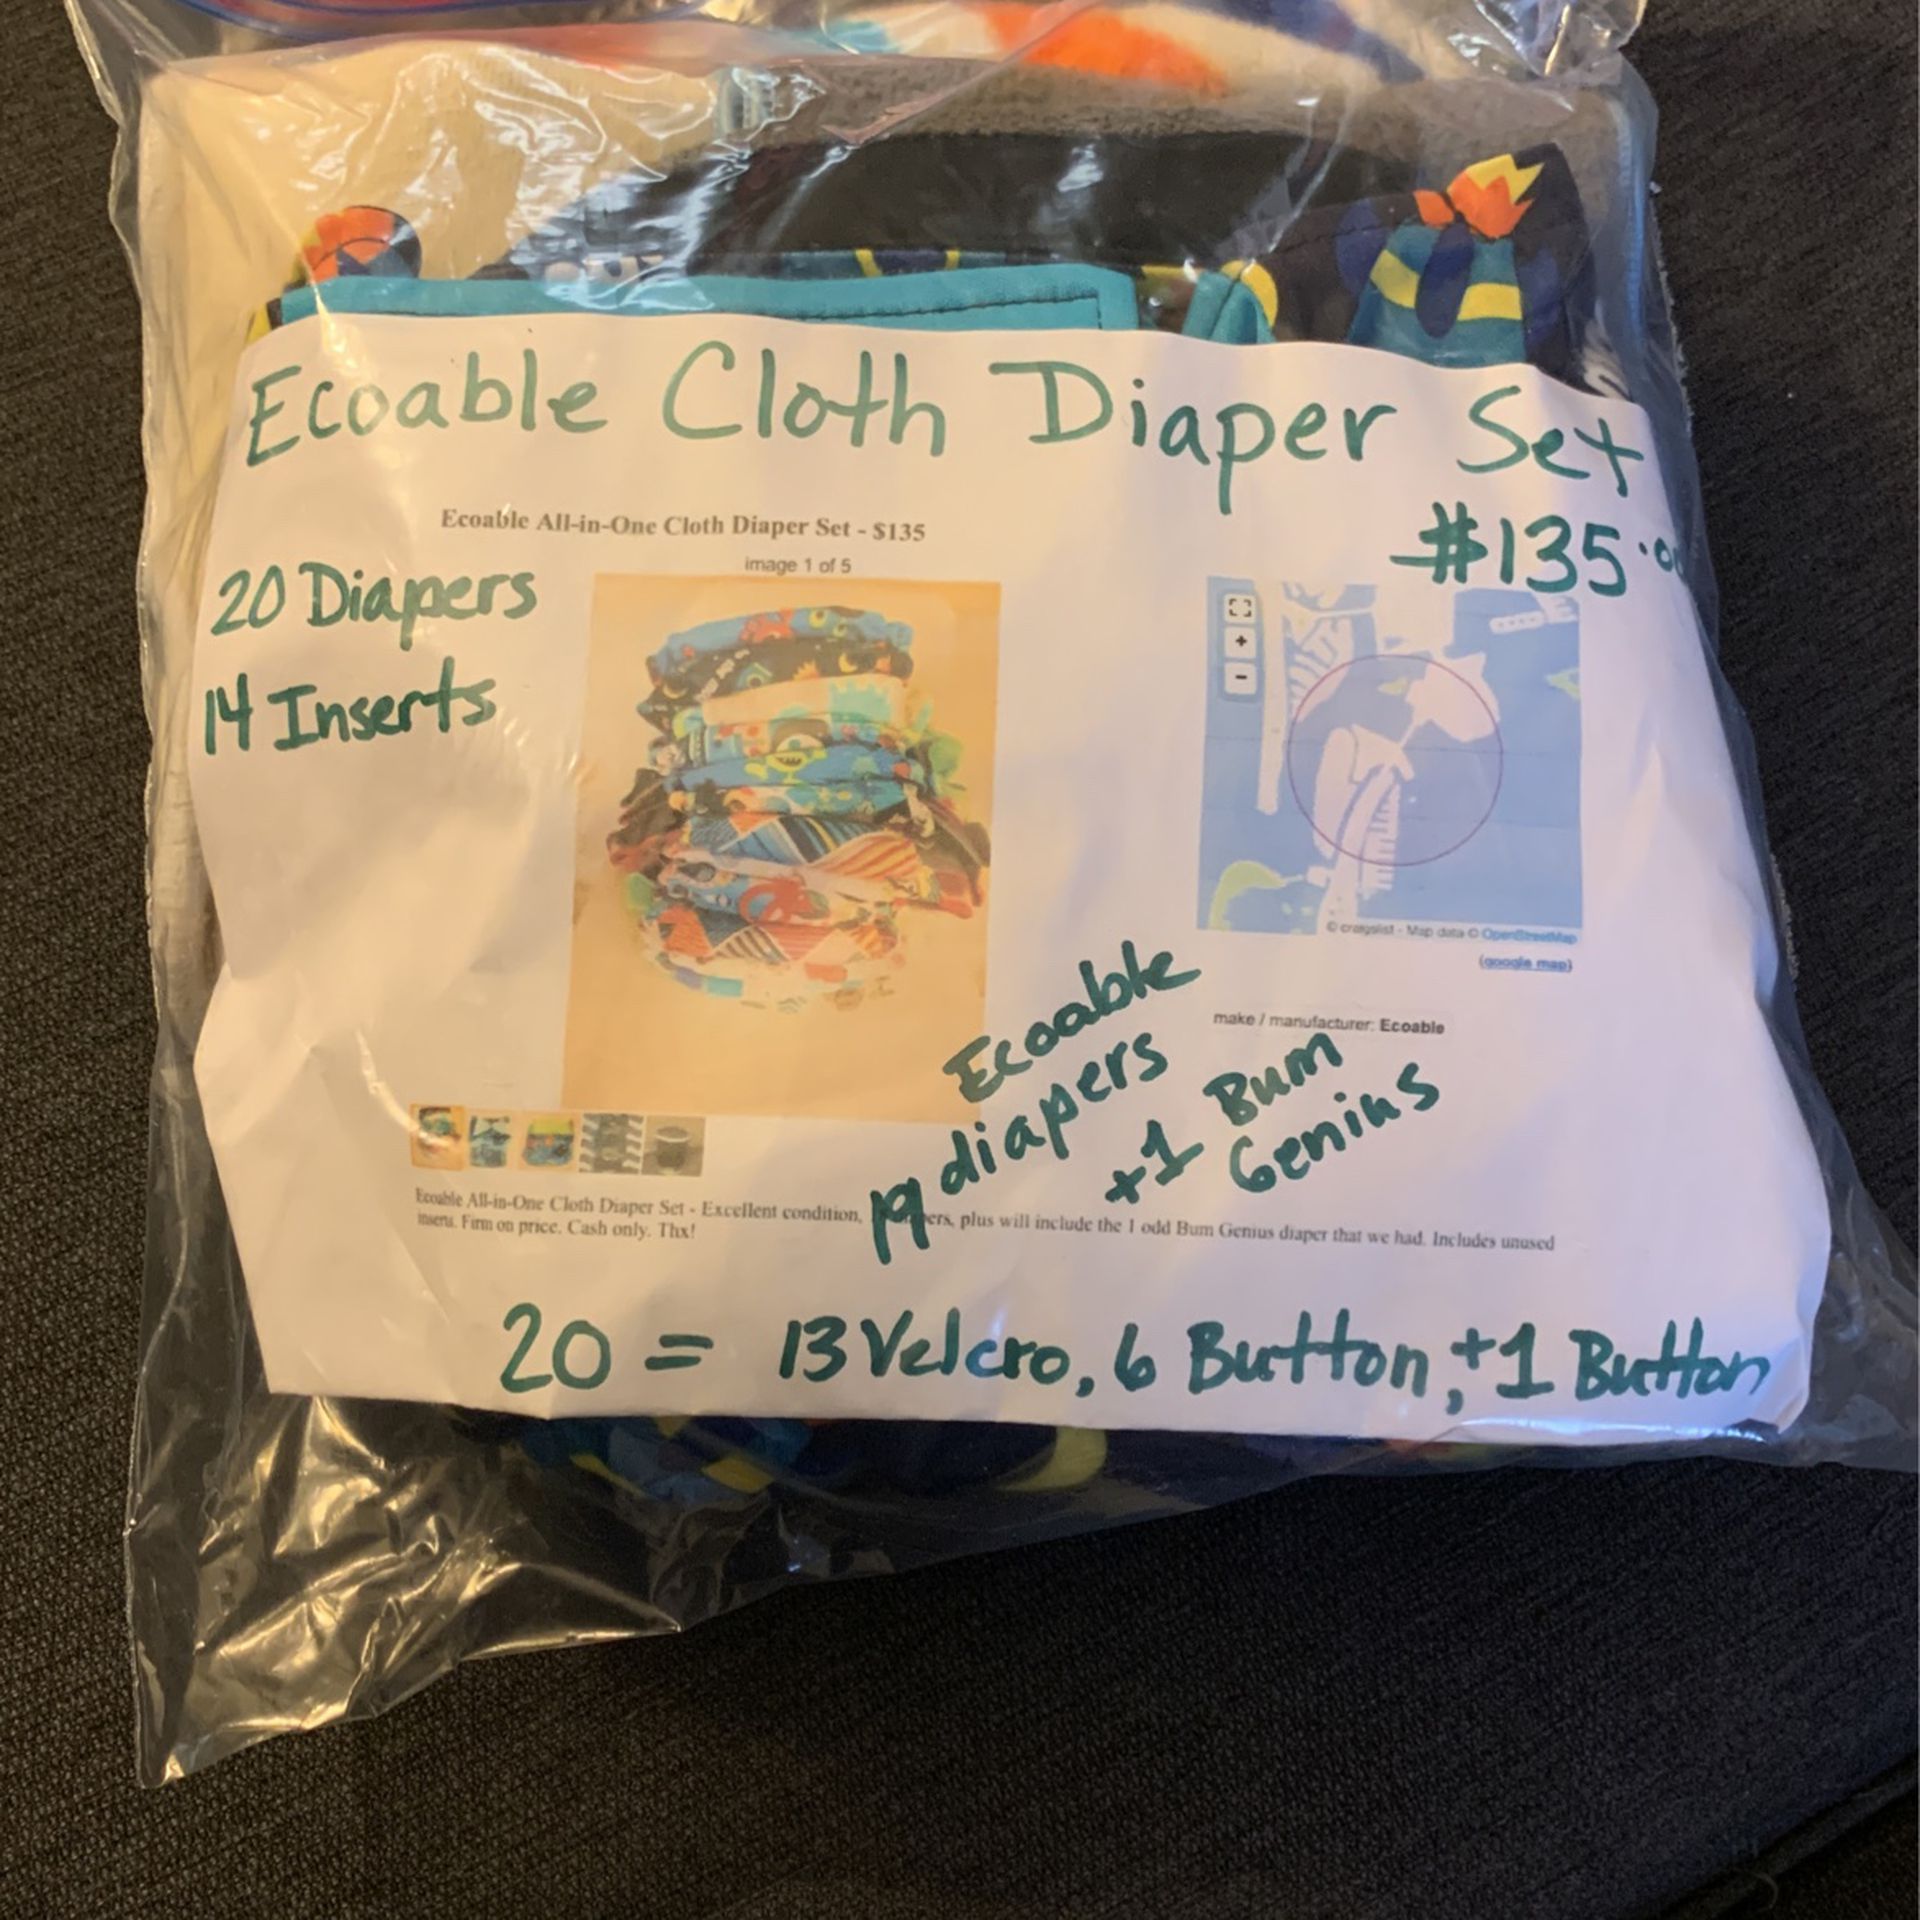 Ecoable Cloth Diaper Set